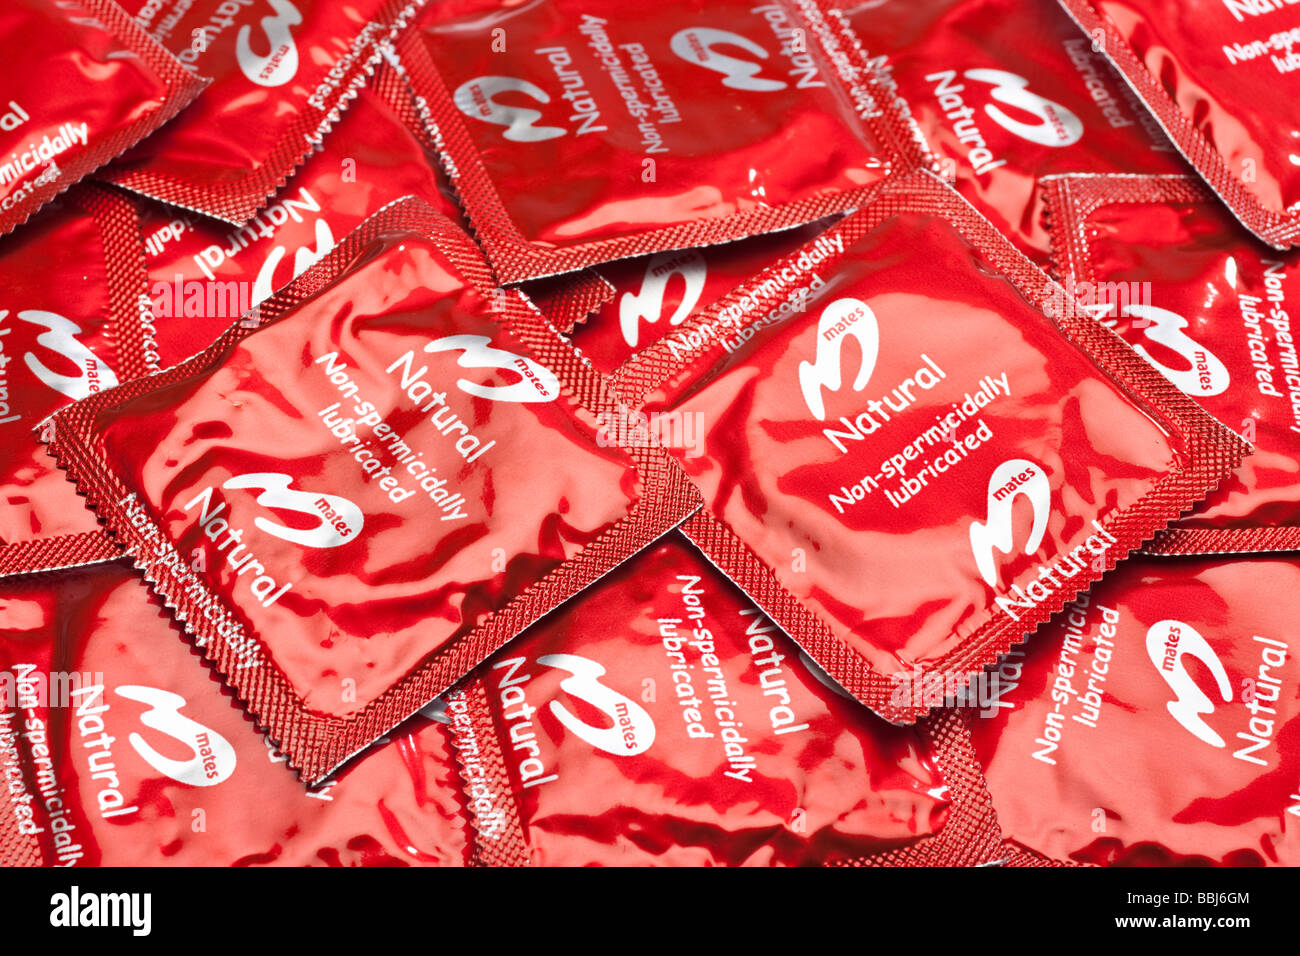 Condoms condom immagini e fotografie stock ad alta risoluzione - Alamy